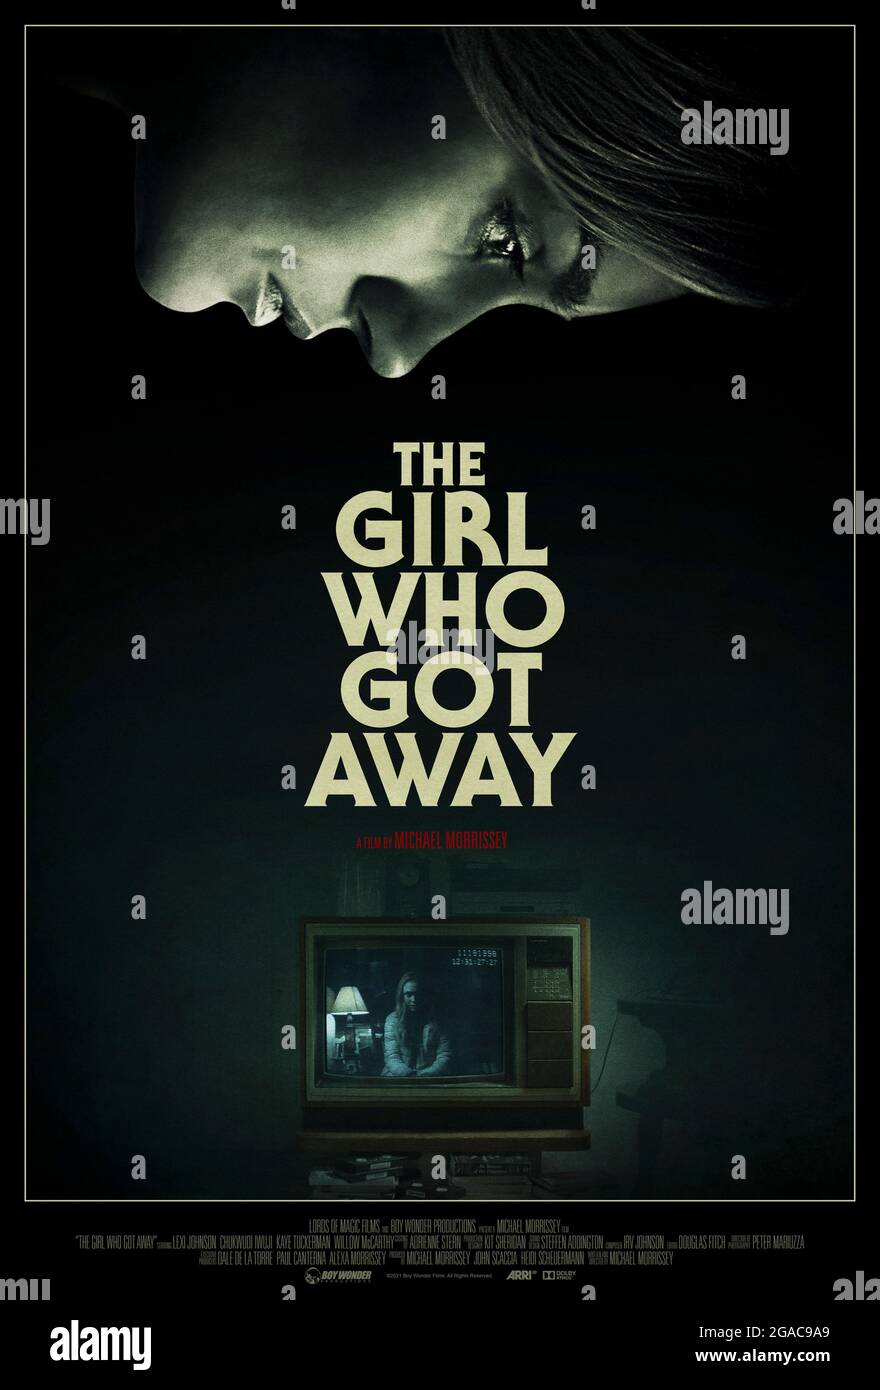 The Girl Who Got Away (2021) diretto da Michael Morrissey e con Kaye Tuckerman, anni Krueger e Audrey Grace Marshal. Una donna serial killer fugge dalla prigione per andare dopo la vittima che è scappata. Foto Stock